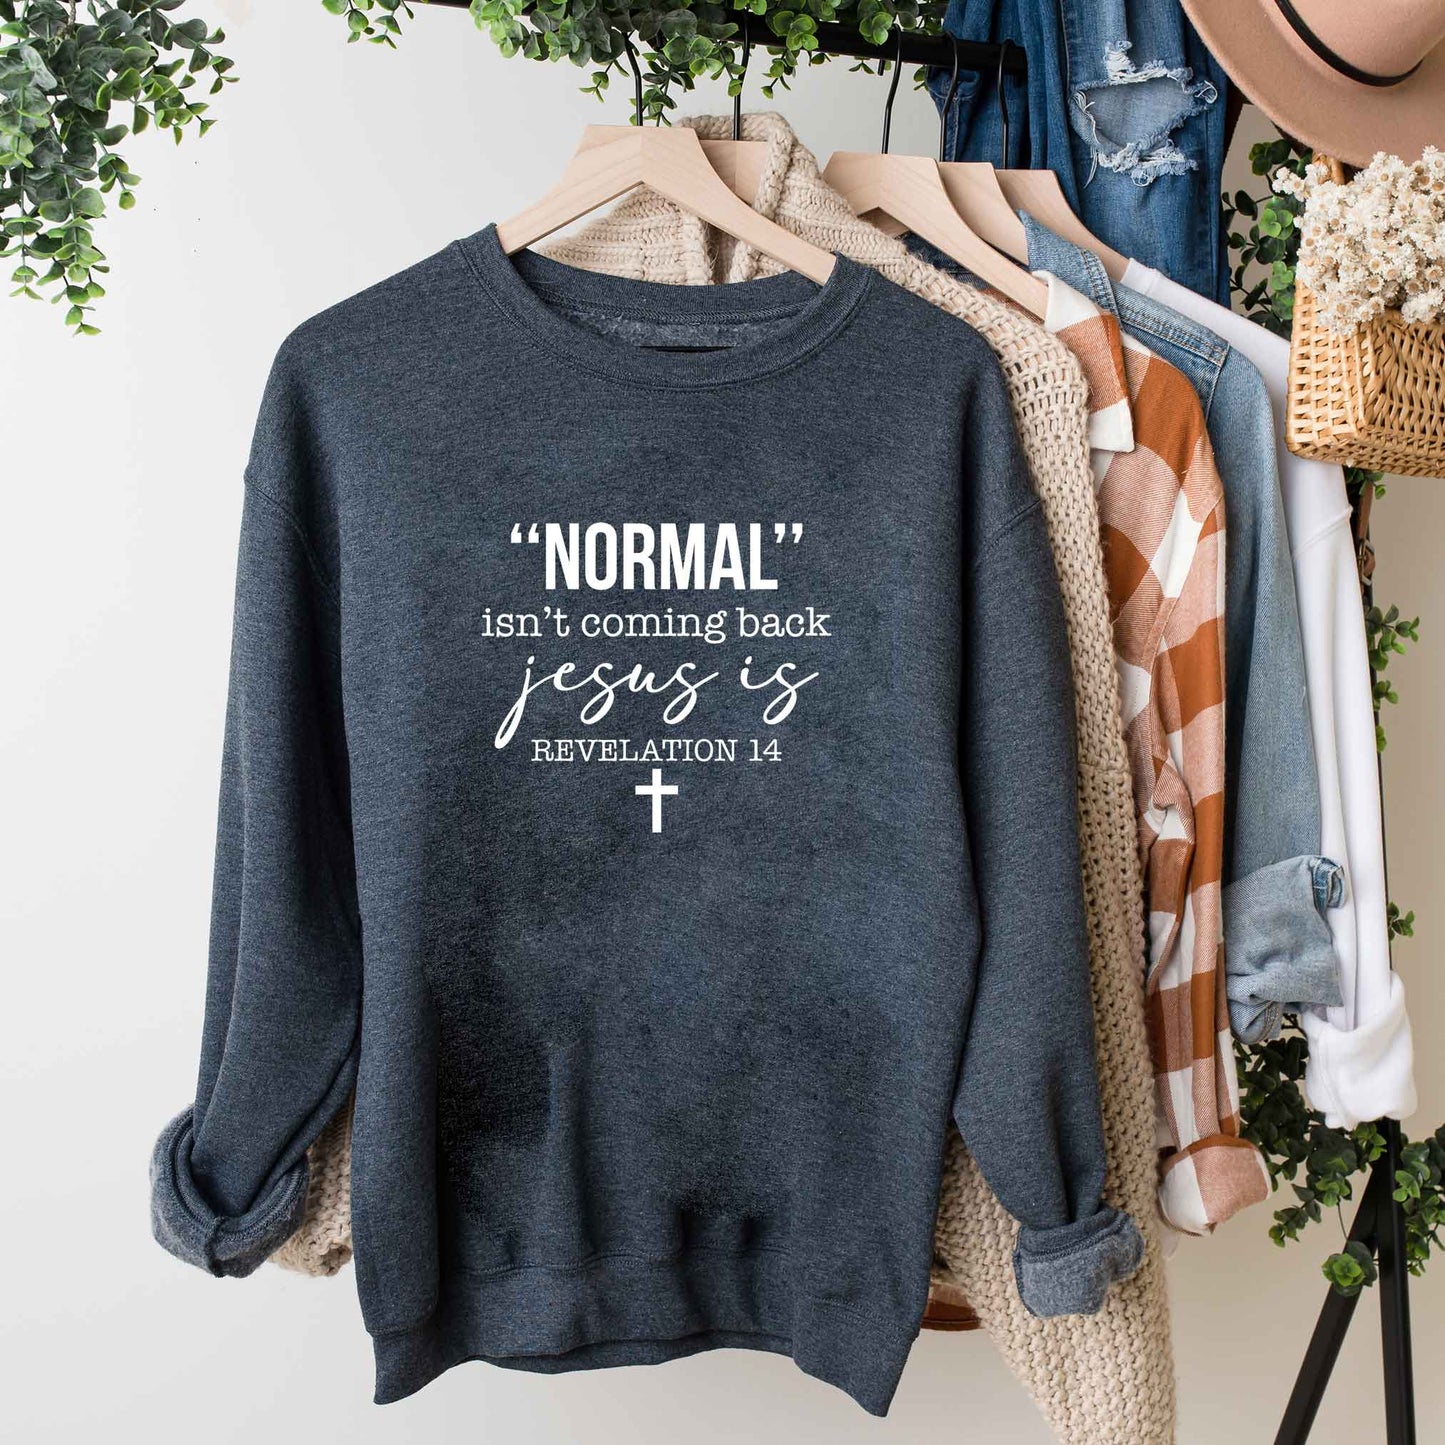 Normal Isn't Coming Back Jesus Is | Sweatshirt